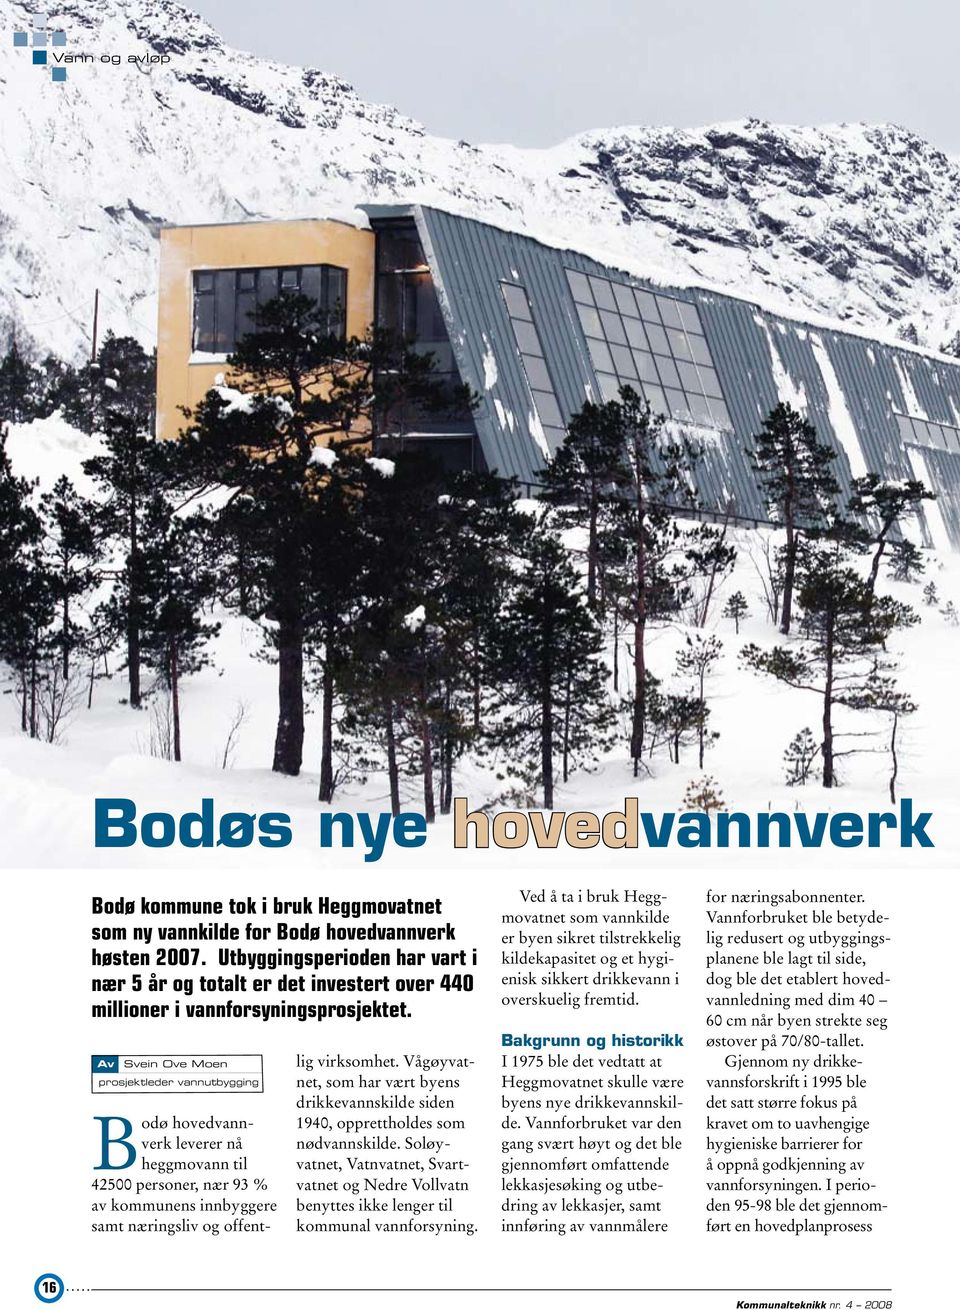 Av Svein Ove Moen prosjektleder vannutbygging Bodø hovedvannverk leverer nå heggmovann til 42500 personer, nær 93 % av kommunens innbyggere samt næringsliv og offentlig virksomhet.